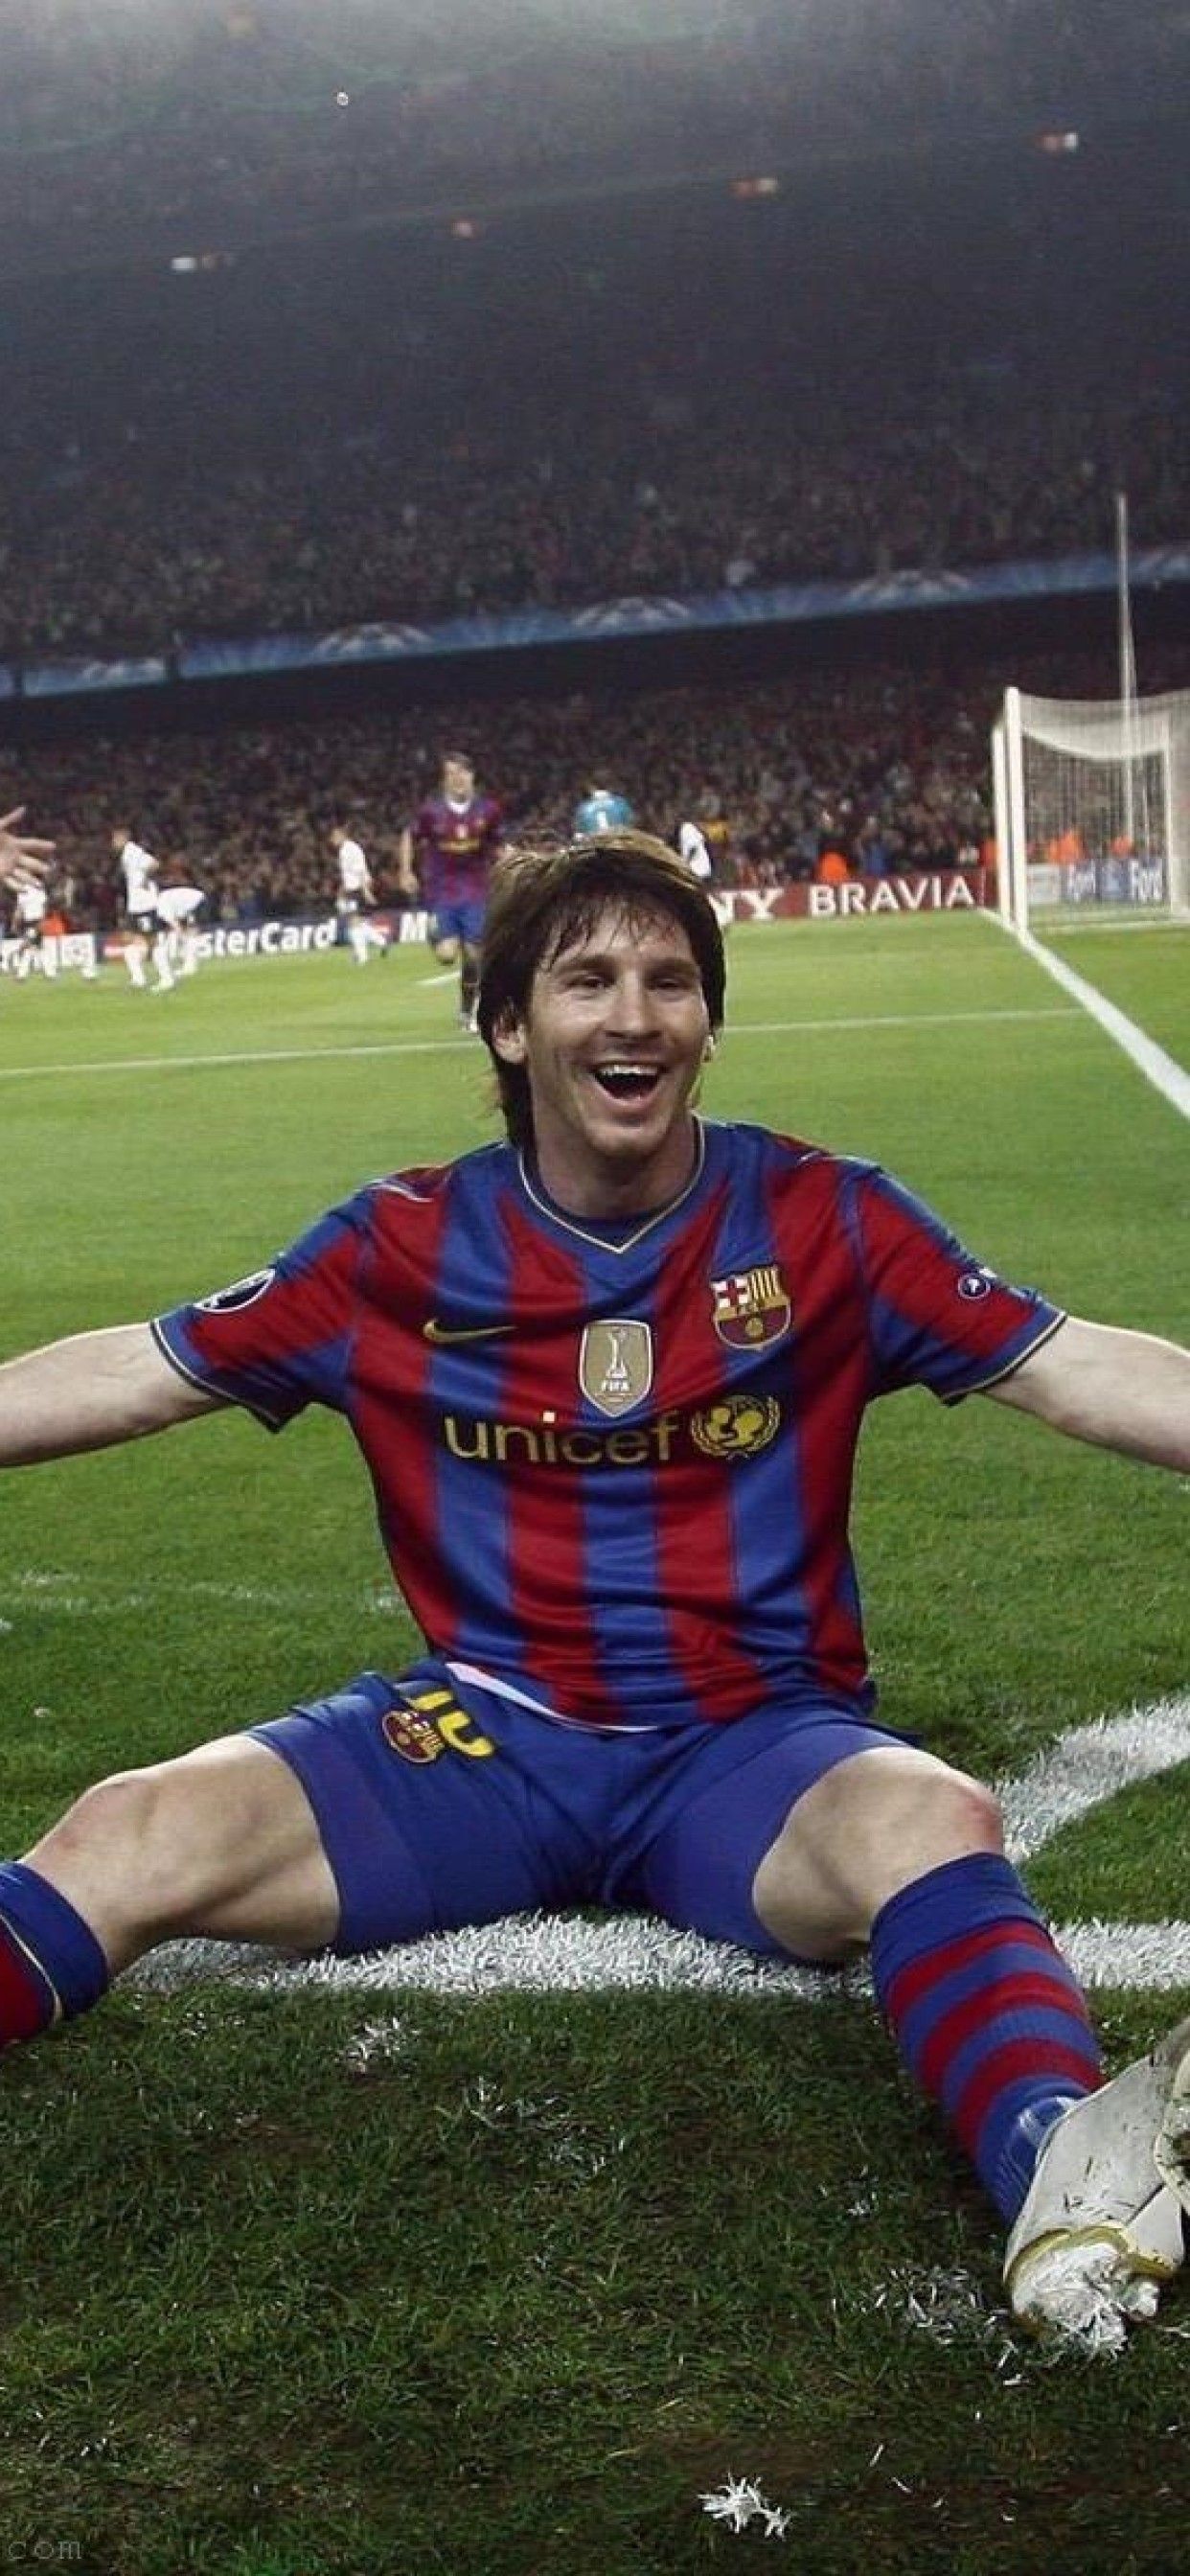 Hãy chiêm ngưỡng những hình ảnh tuyệt đẹp về Messi với phong cách thẩm mỹ độc đáo của riêng mình. Chắc chắn bạn sẽ yêu thích và không thể rời mắt khi thưởng thức chúng.